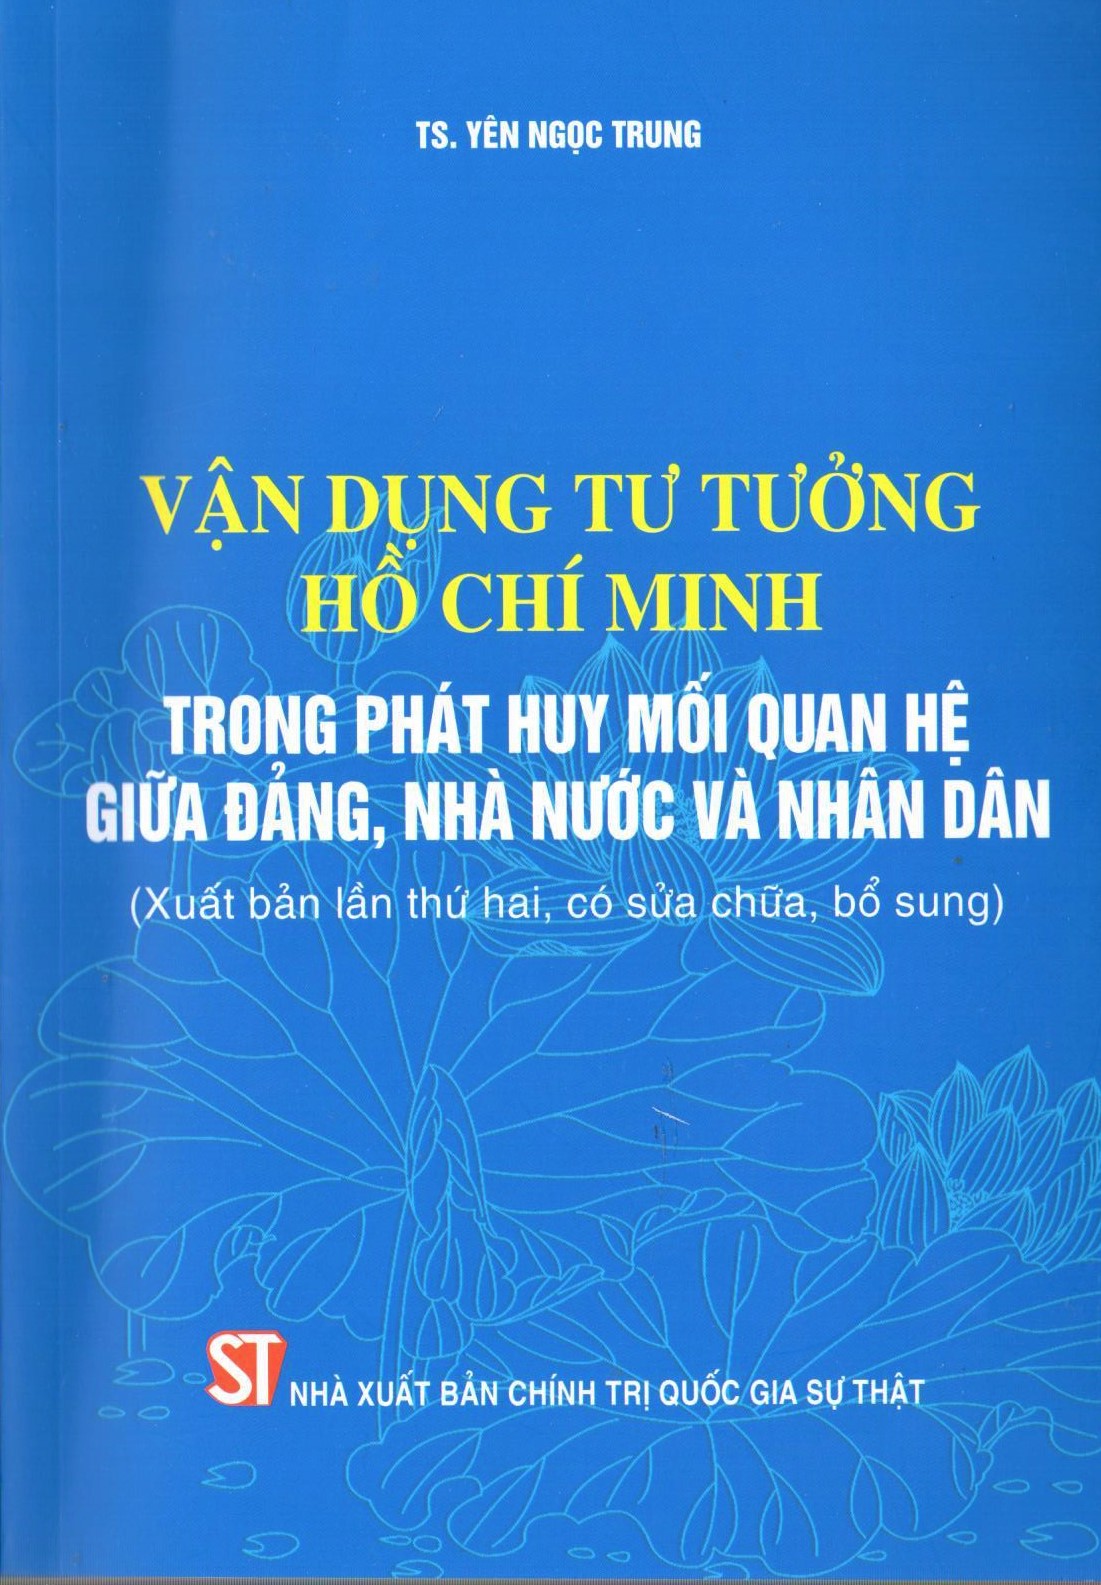 Vận dụng tư tưởng Hồ Chí Minh trong phát huy mối quan hệ giữa Đảng, Nhà nước và nhân dân (Xuất bản lần thứ hai, có sửa chữa, bổ sung)